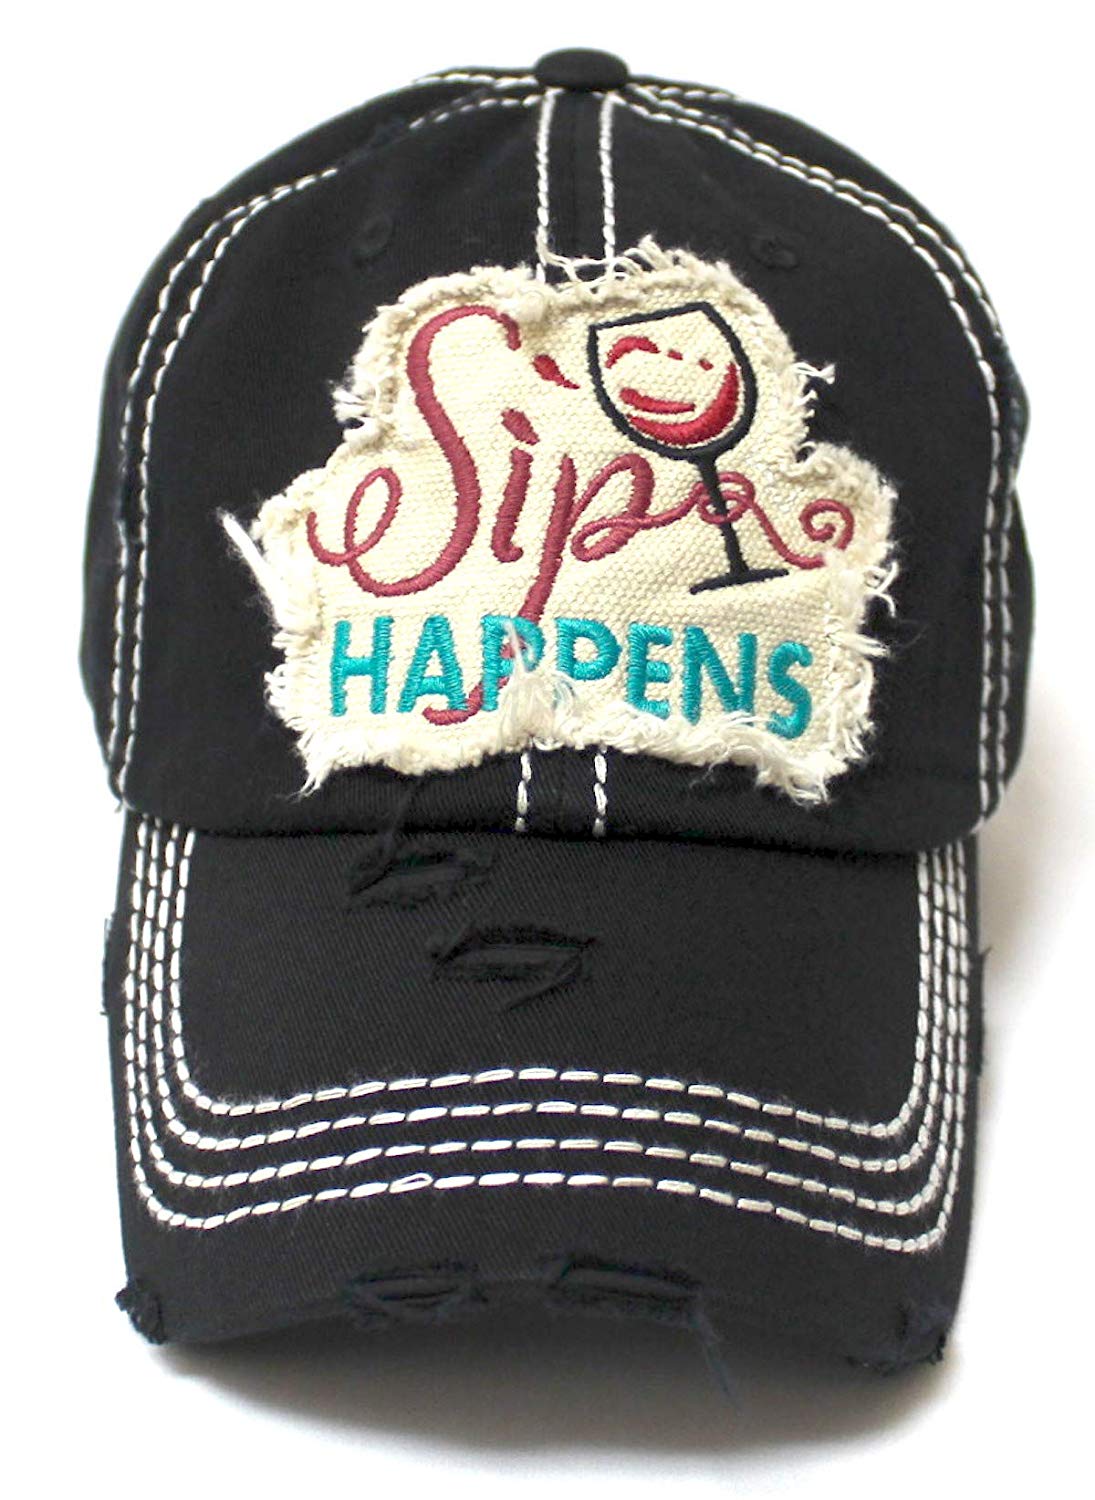 CAPS 'N VINTAGE Women's Baseball Cap Wine Glass Sip Happens Monogram Embroidery Hat, Black - Caps 'N Vintage 